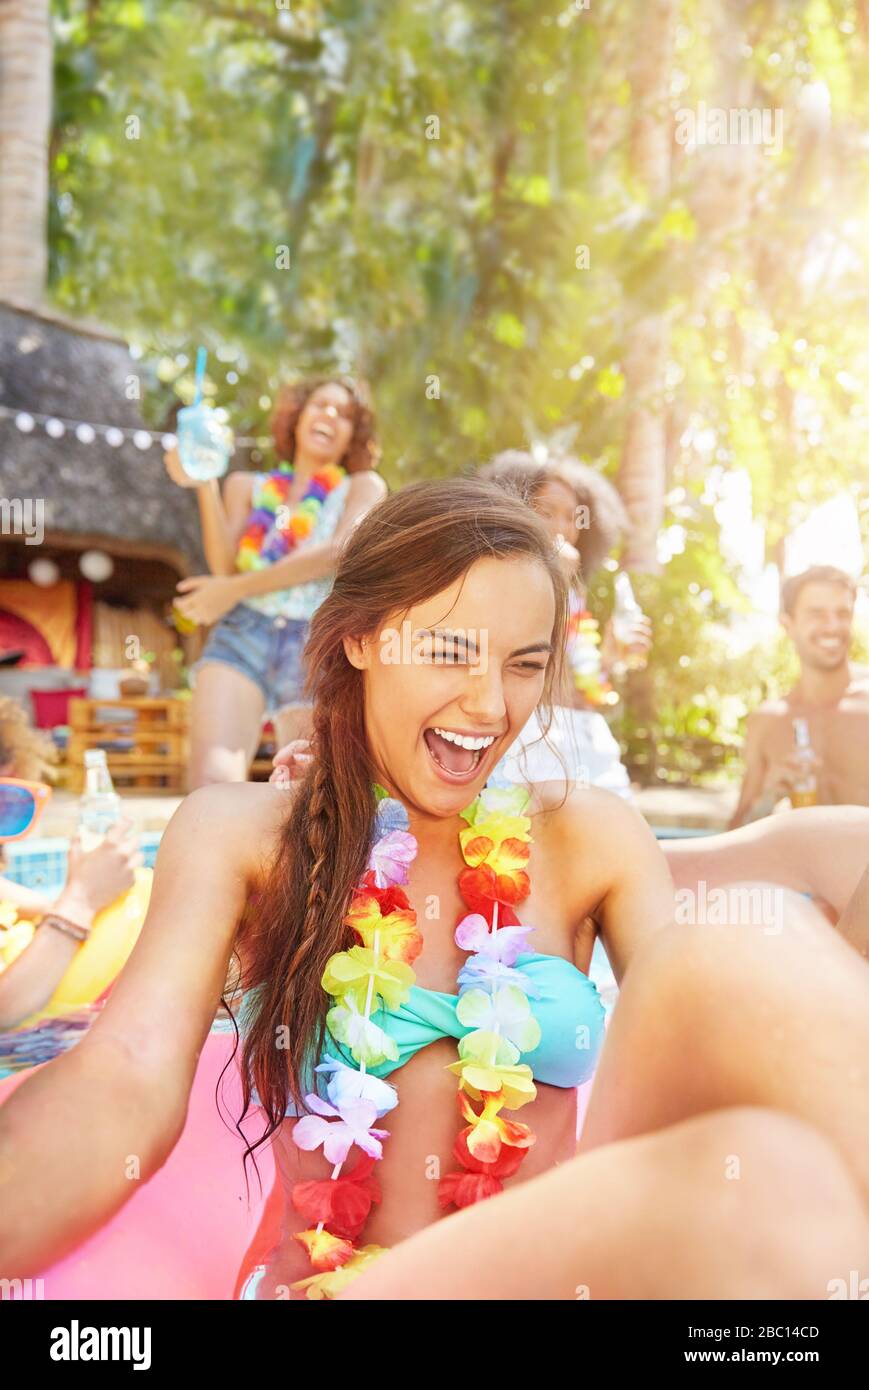 Begeisterte, lachende junge Frau, die im Sommer-Schwimmbad Lei trägt Stockfoto